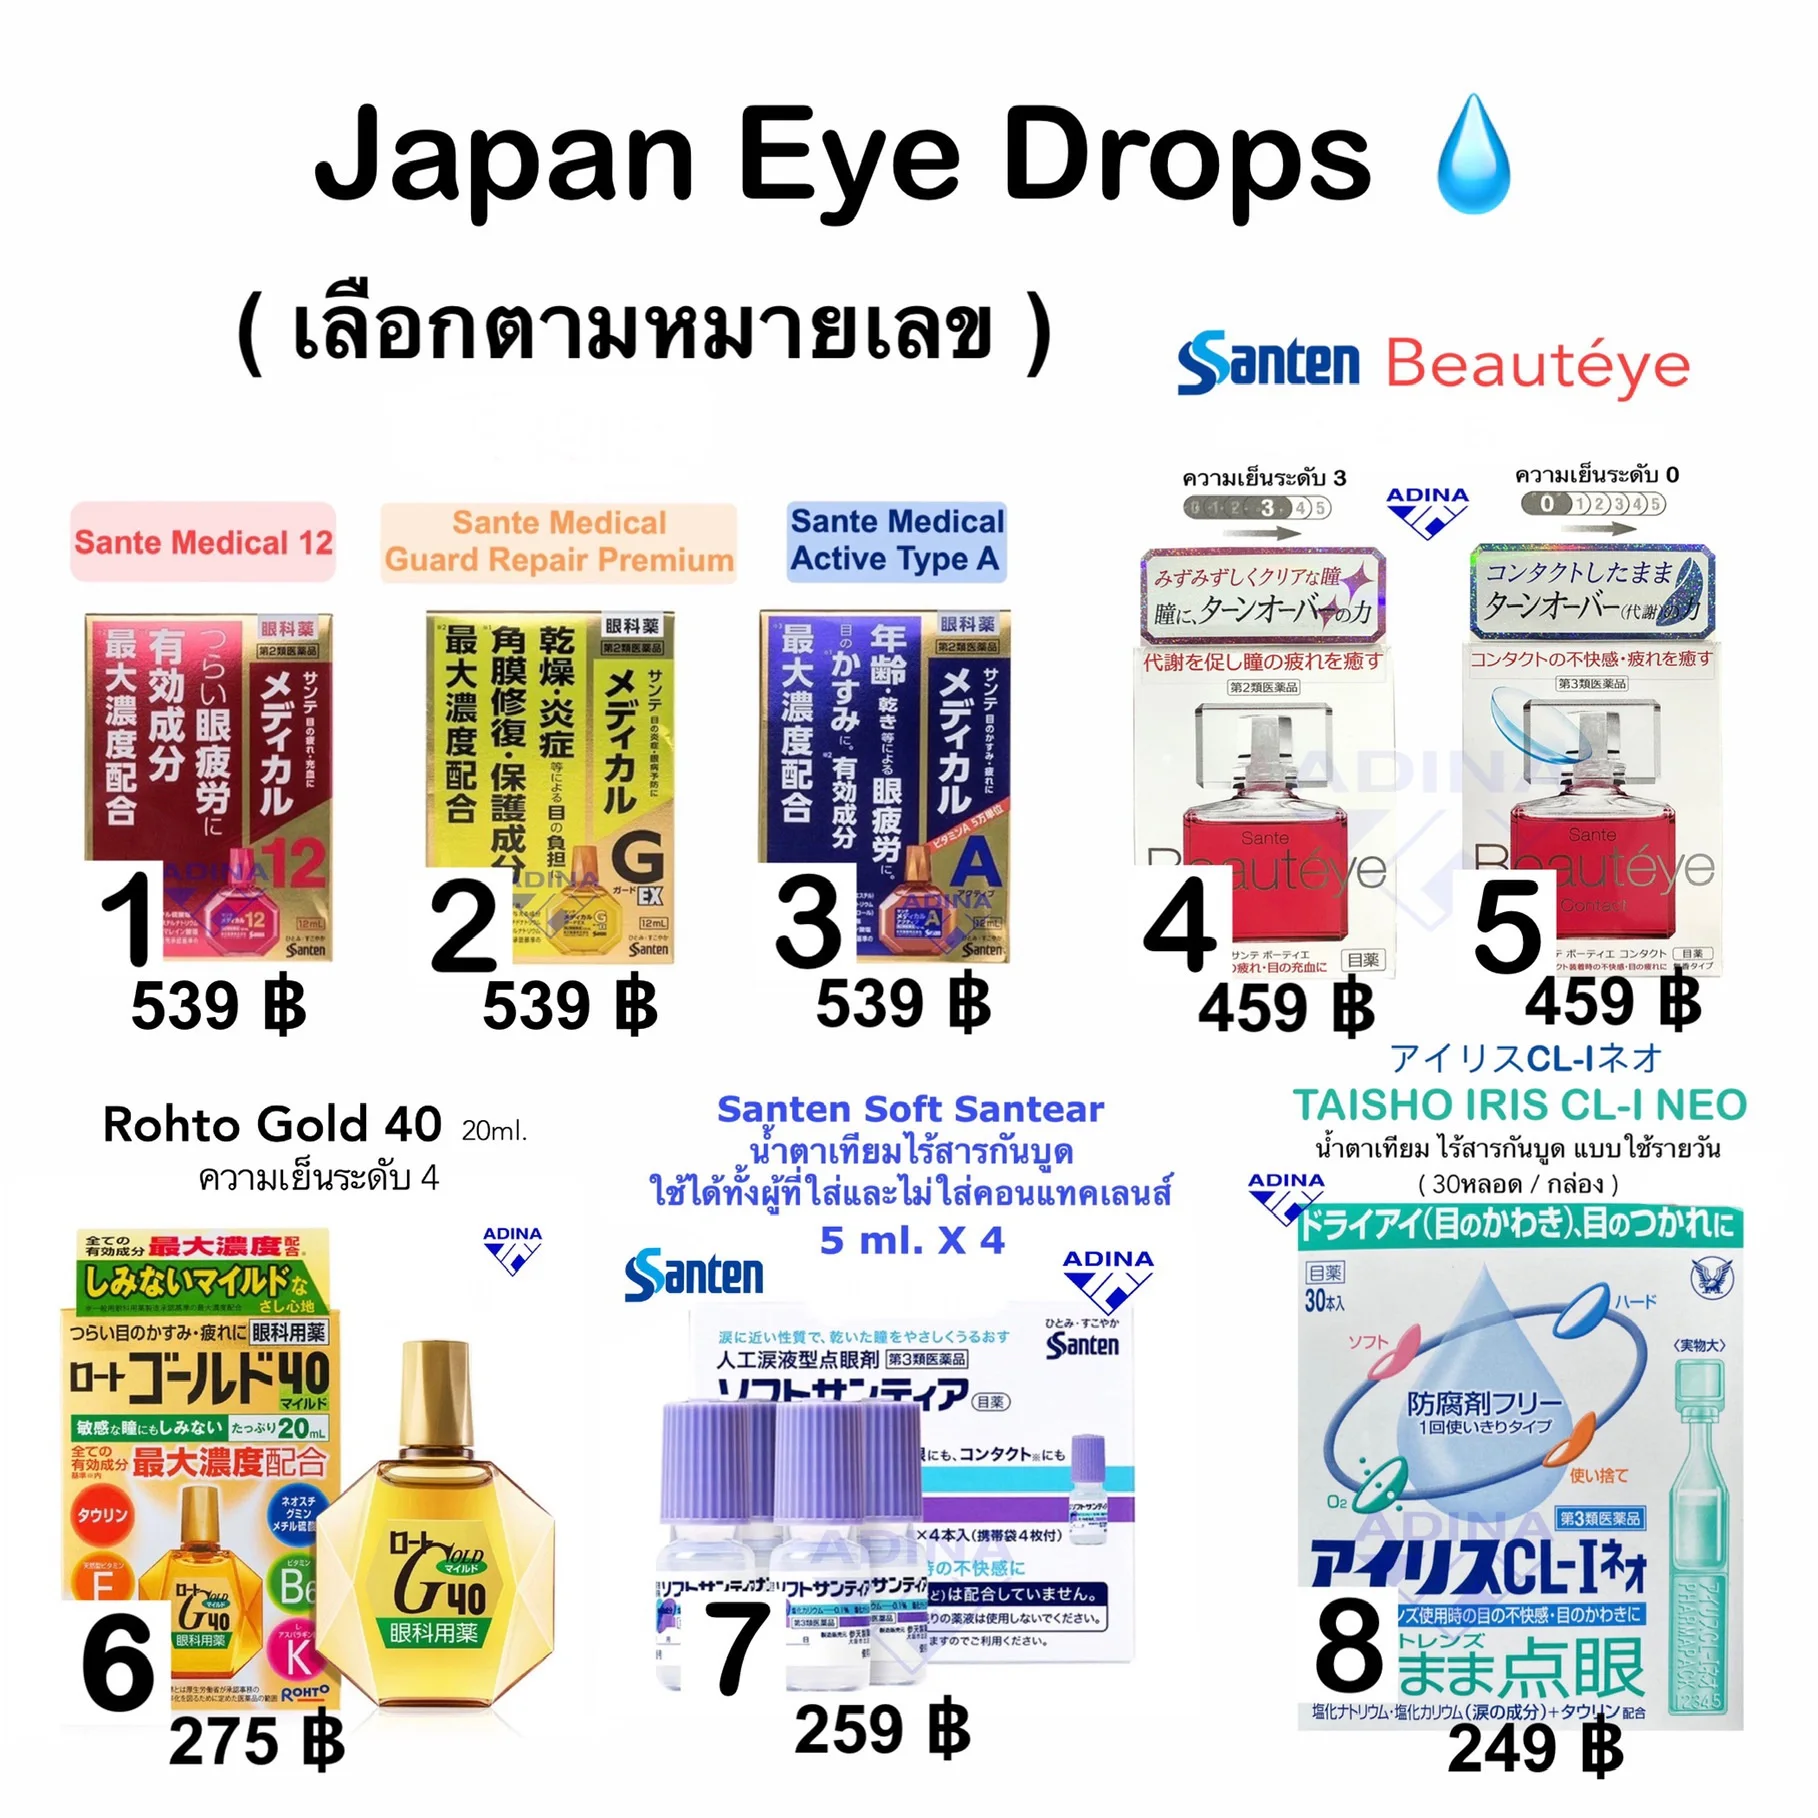 Japan Eye Drops